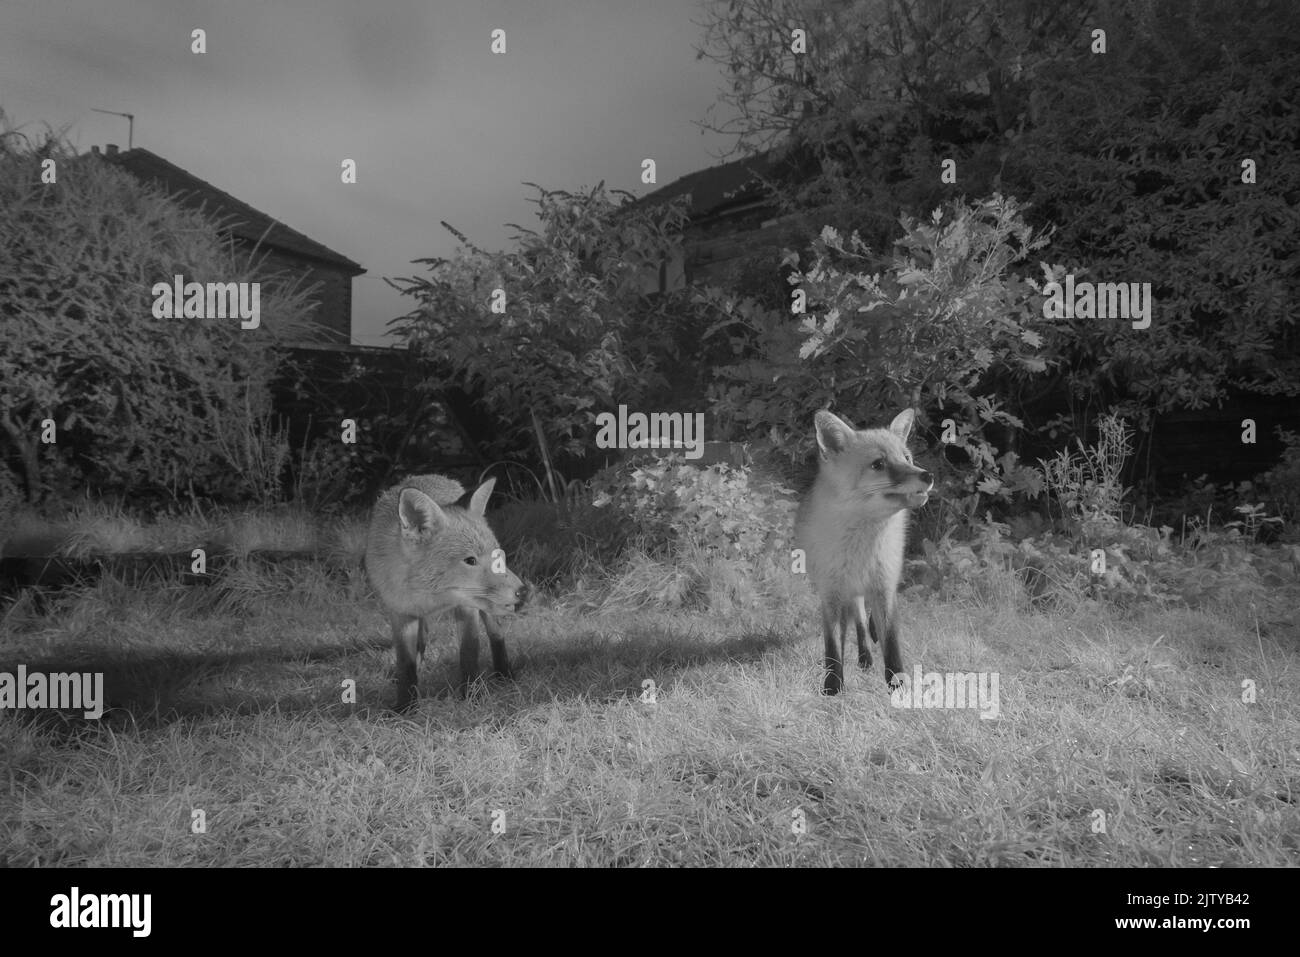 Renards rouges (Vulpes vulpes) dans un jardin urbain, Grand Manchester. Novembre. Photographié avec un piège infrarouge converti. Banque D'Images